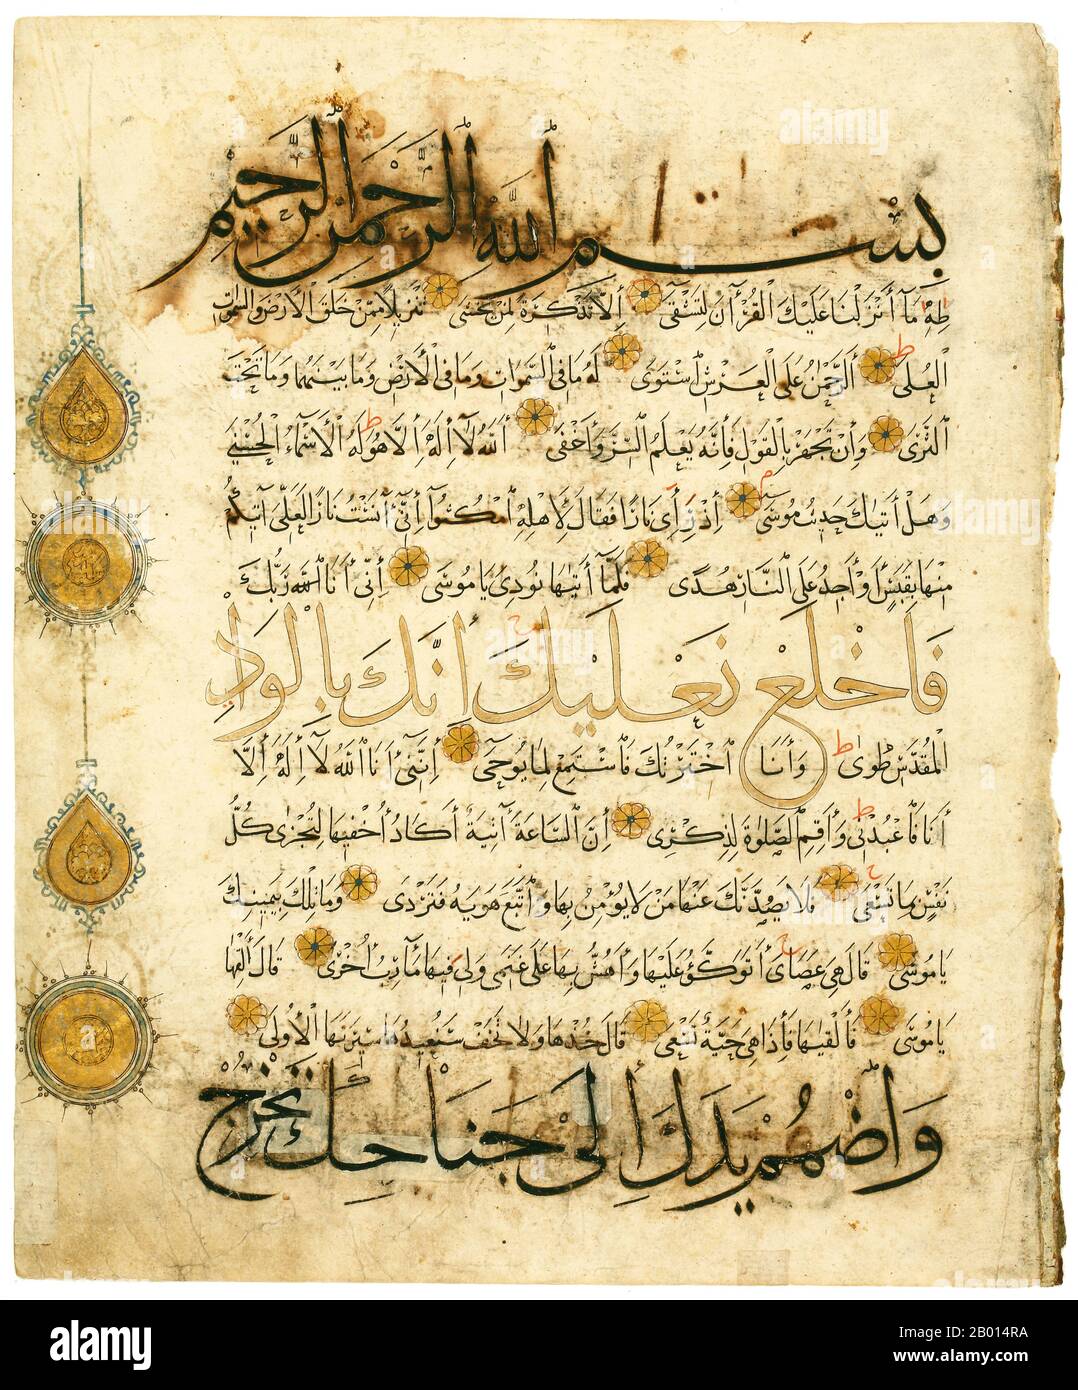 Yemen: Foglia da un Corano con quattro tipi di sceneggiatura, 14 ° secolo. Insolitamente, questa foglia di un Corano mostra quattro diversi tipi di script. Il Kufi orientale è usato per il capitolo incorniciato e illuminato per la sura 20 e i marcatori rotondi per ogni decimo verso. In aggiunta Naskh è usato per il testo principale; Muhaqqaq è usato nelle linee nere contornate con oro; e Thuluth è usato per le linee centrali dorate. Foto Stock